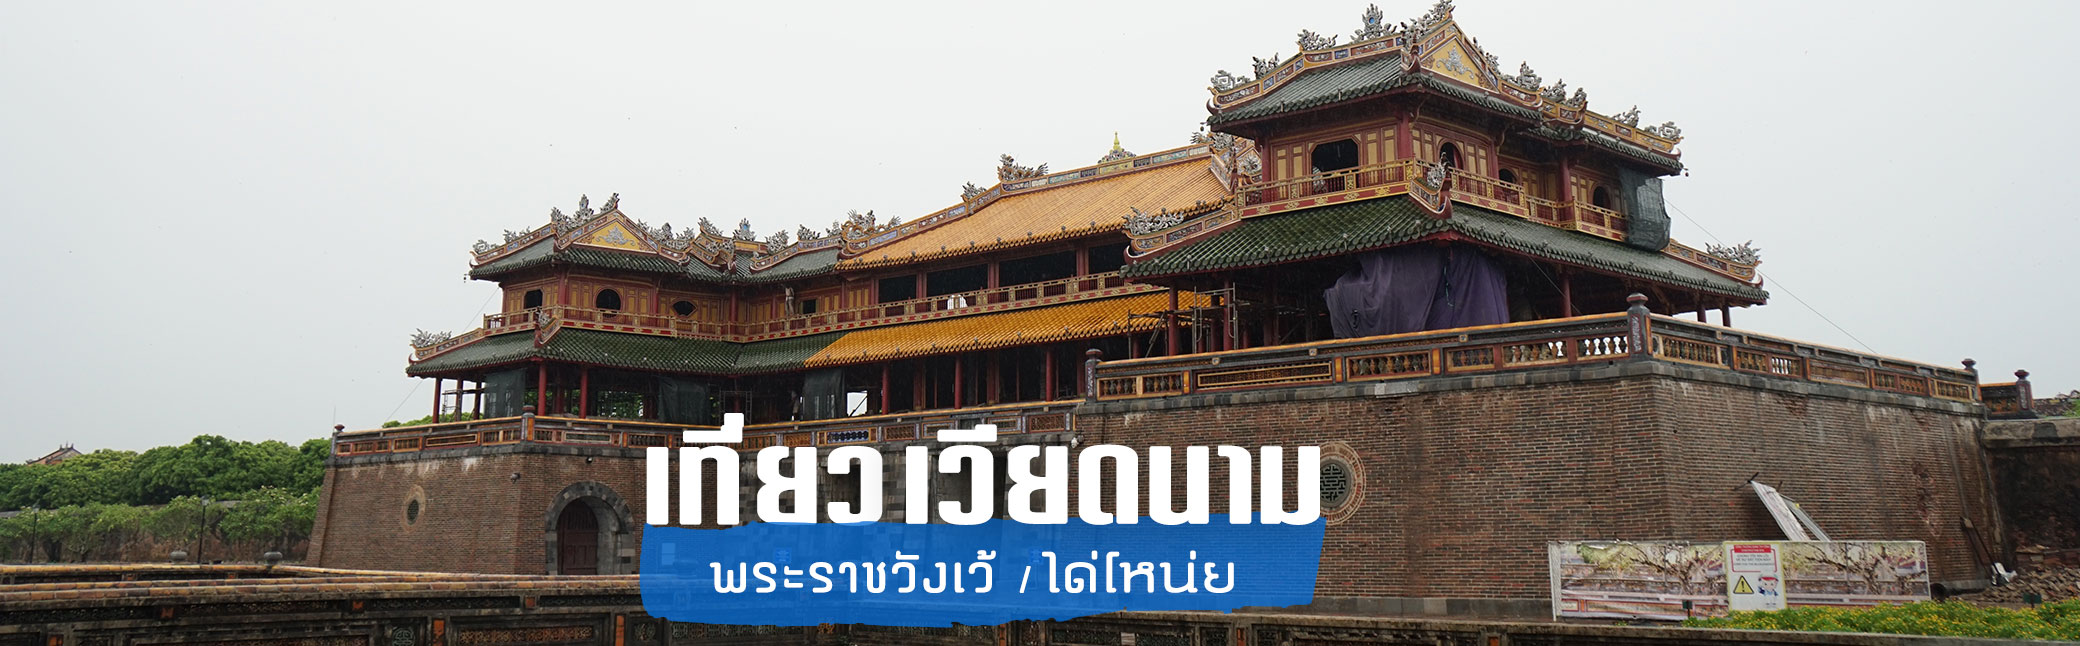 เที่ยวเวียดนาม พระราชวังเว้ หรือพระราชวังได่โหน่ย (Hue Royal Palace) ไปเที่ยวเวียดนามต้องไปที่นี่